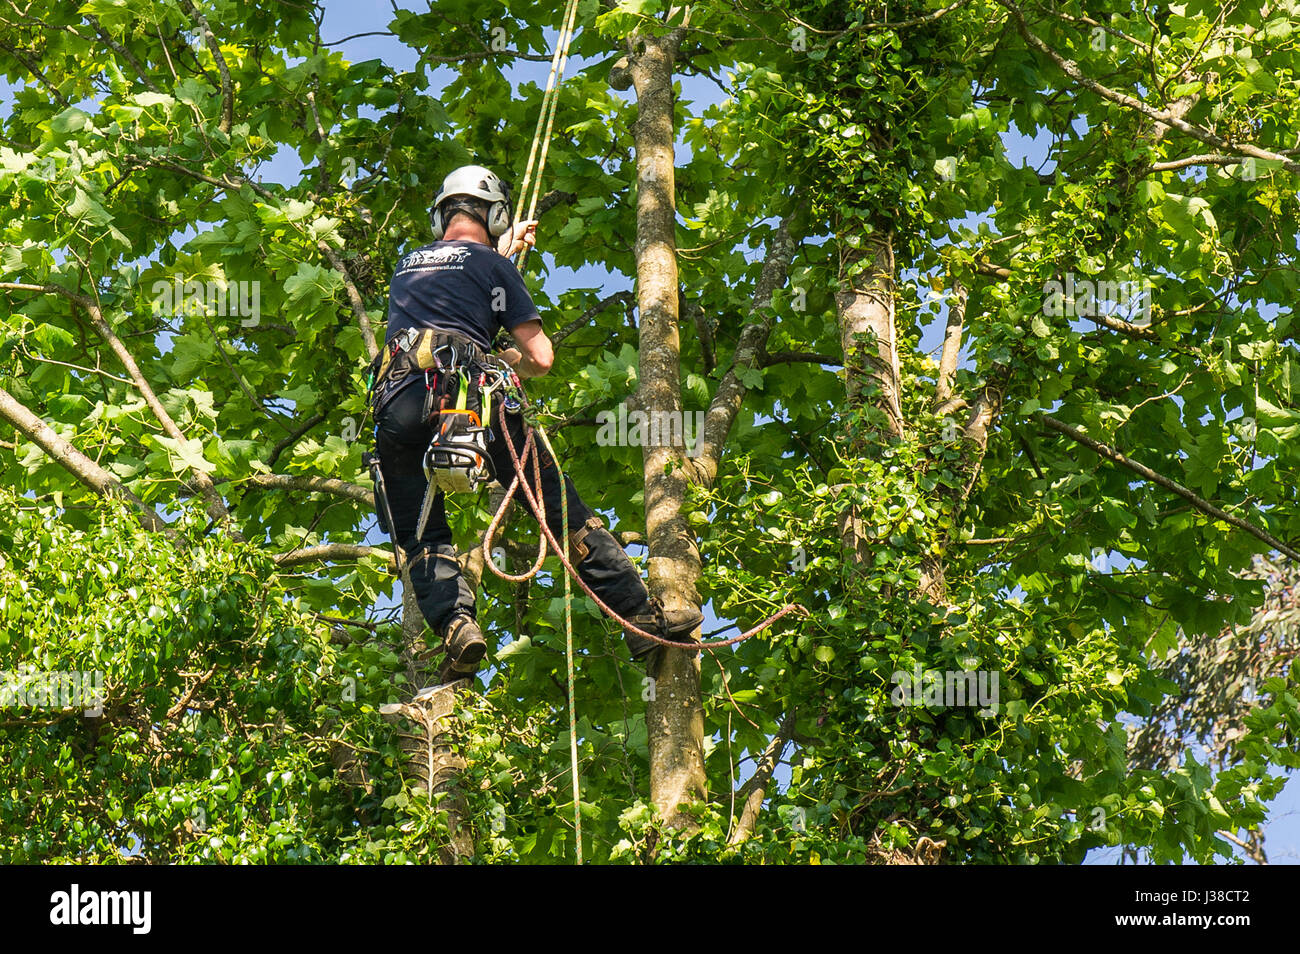 https://c8.alamy.com/compes/j38ct2/tree-surgeon-arboriculturist-escalando-las-ramas-de-un-arbol-de-follaje-sogas-cuerdas-cuerda-arnes-de-seguridad-ropa-de-trabajo-de-proteccion-de-trabajadores-manuales-equipos-j38ct2.jpg